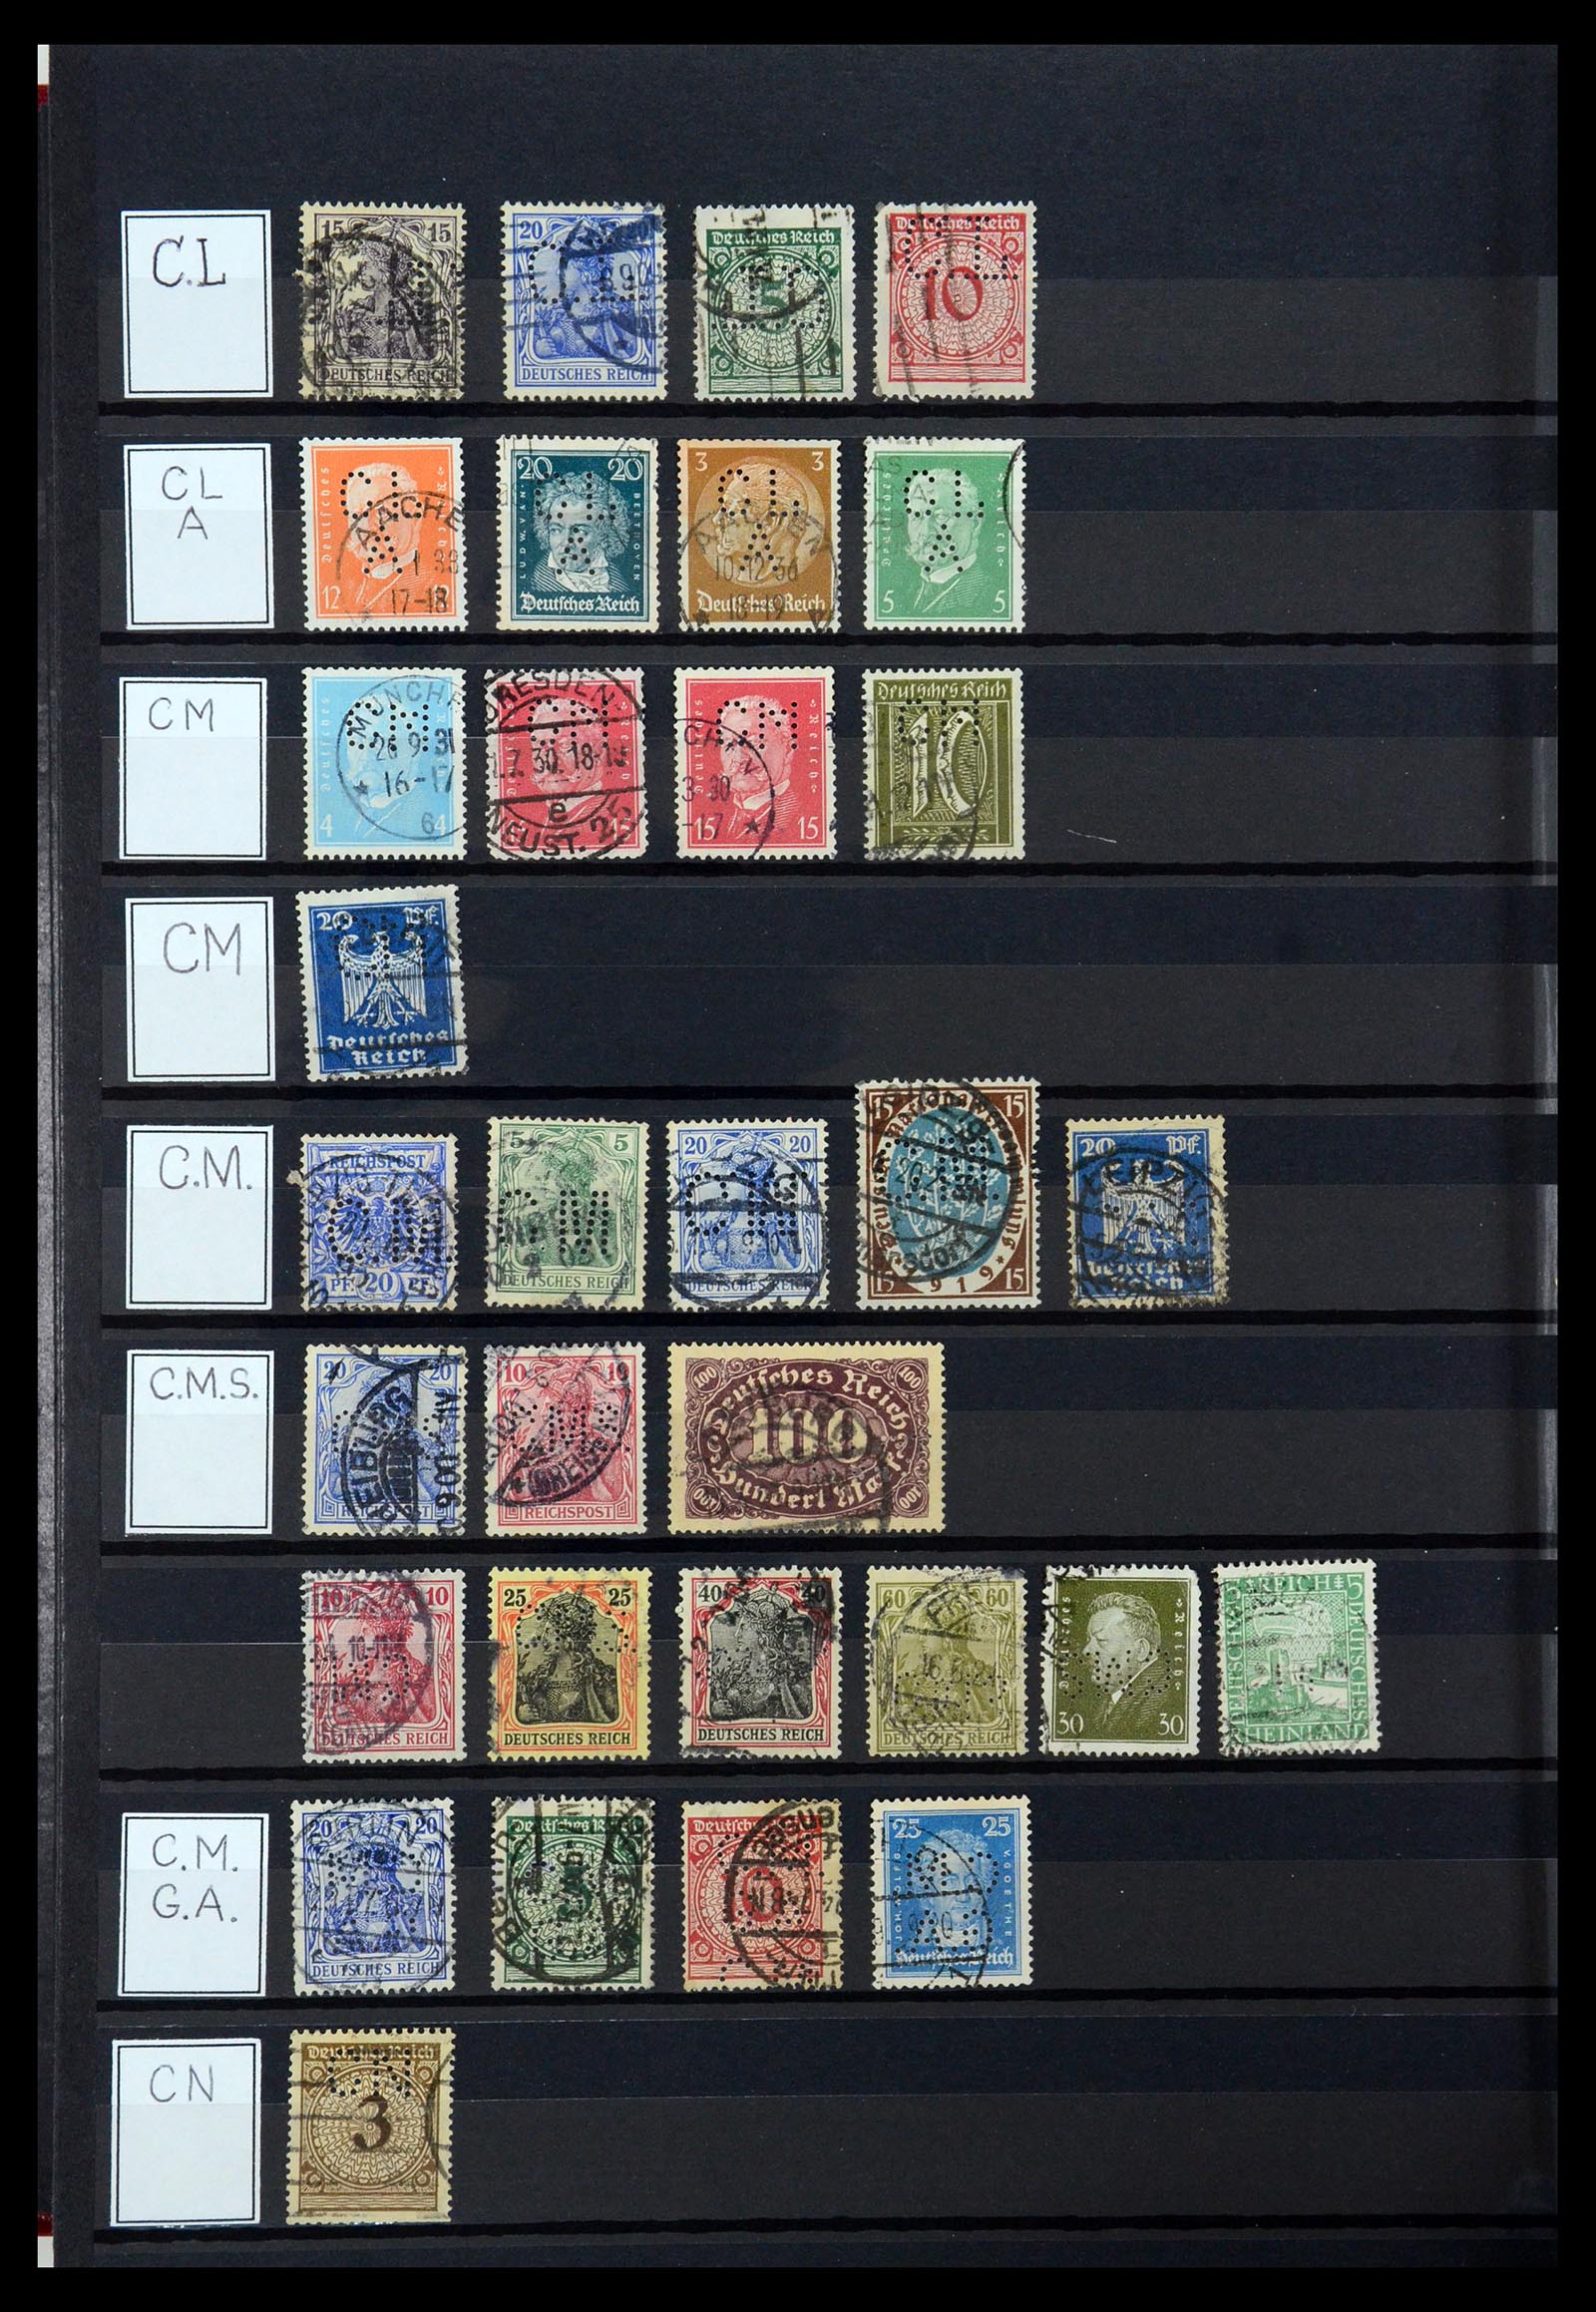 36405 076 - Stamp collection 36405 German Reich perfins 1880-1945.